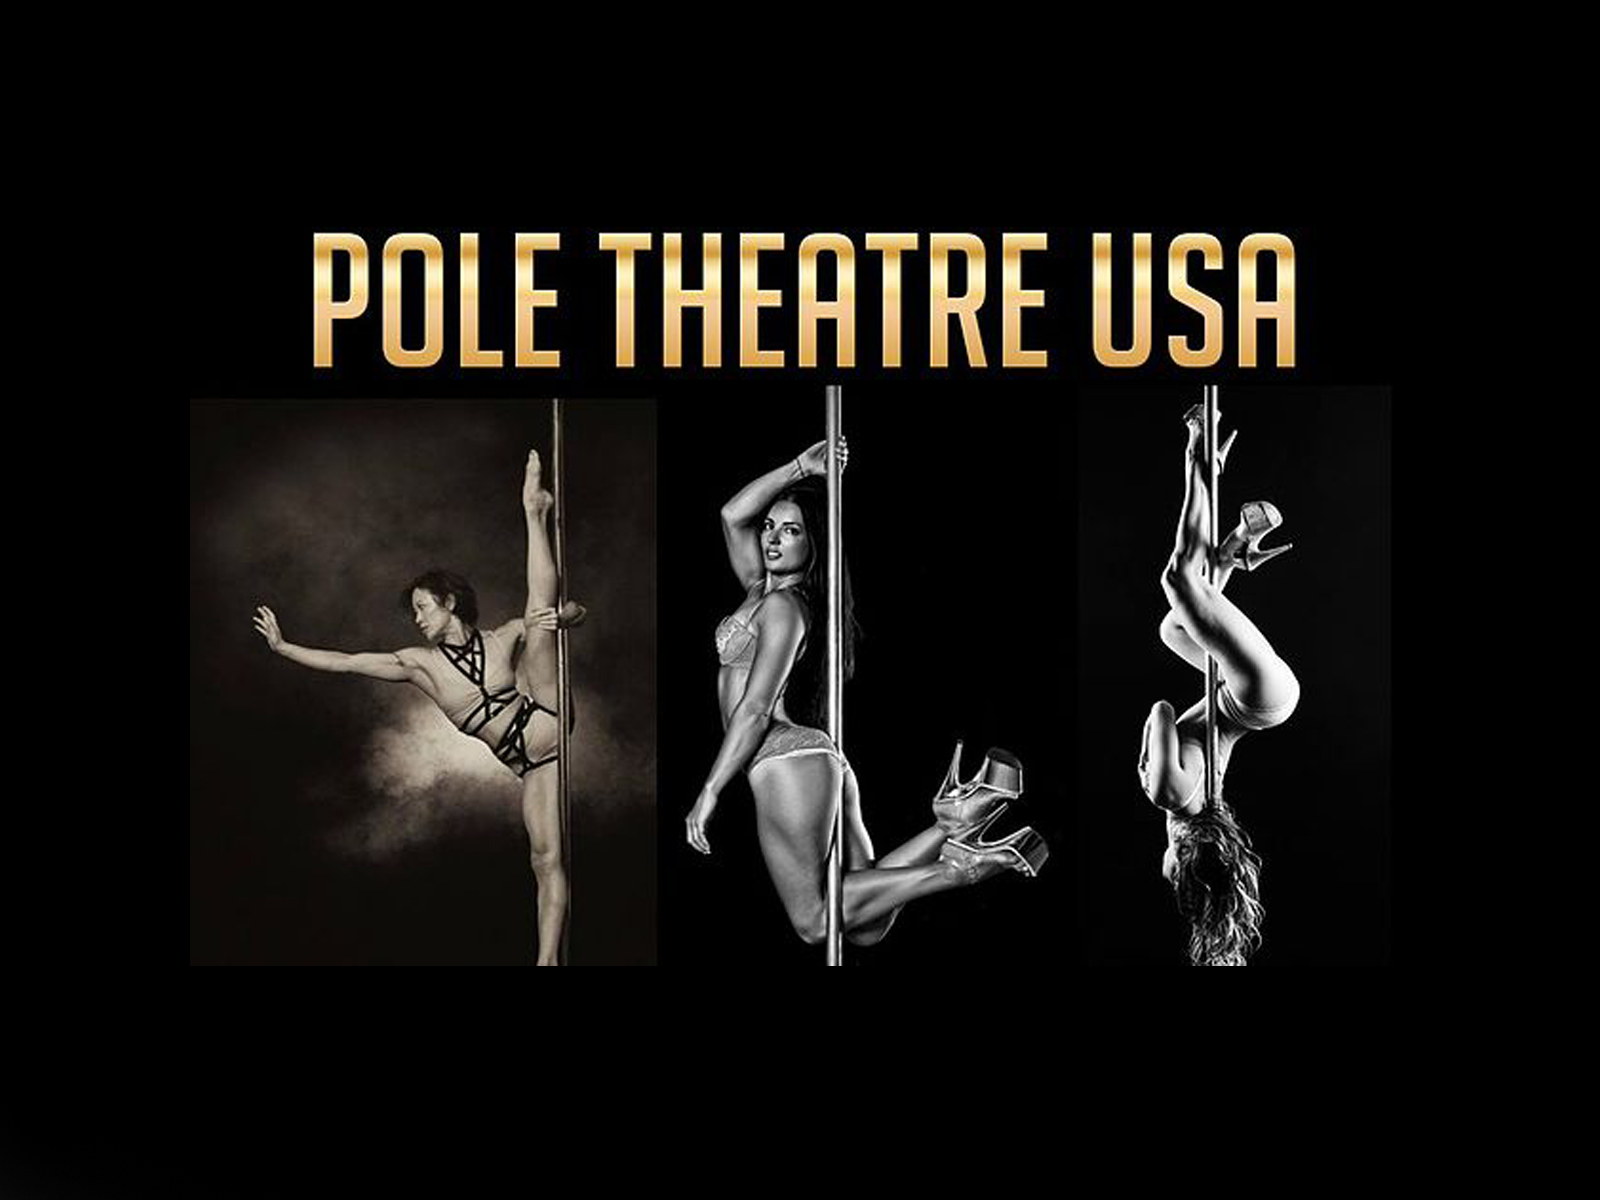 Pole Theatre USA